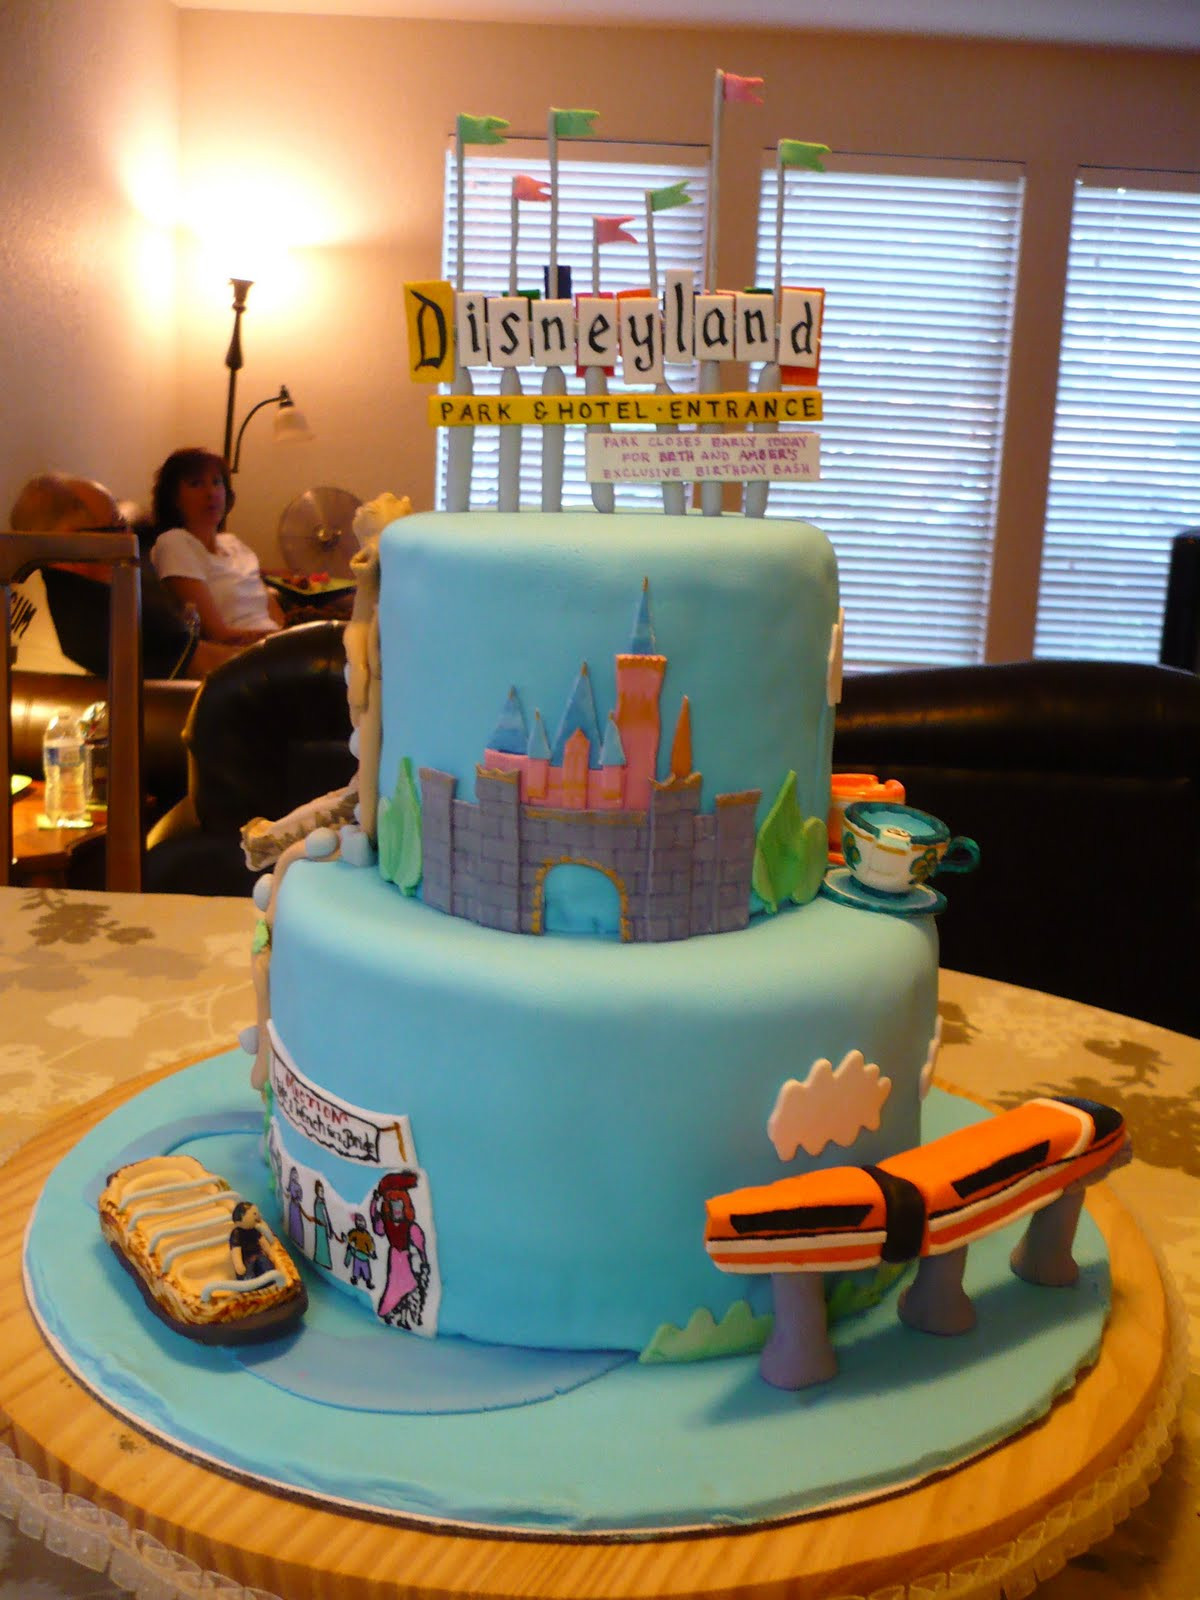 Disneyland Birthday Cake
 The Wright Report DISNEYLAND CAKE